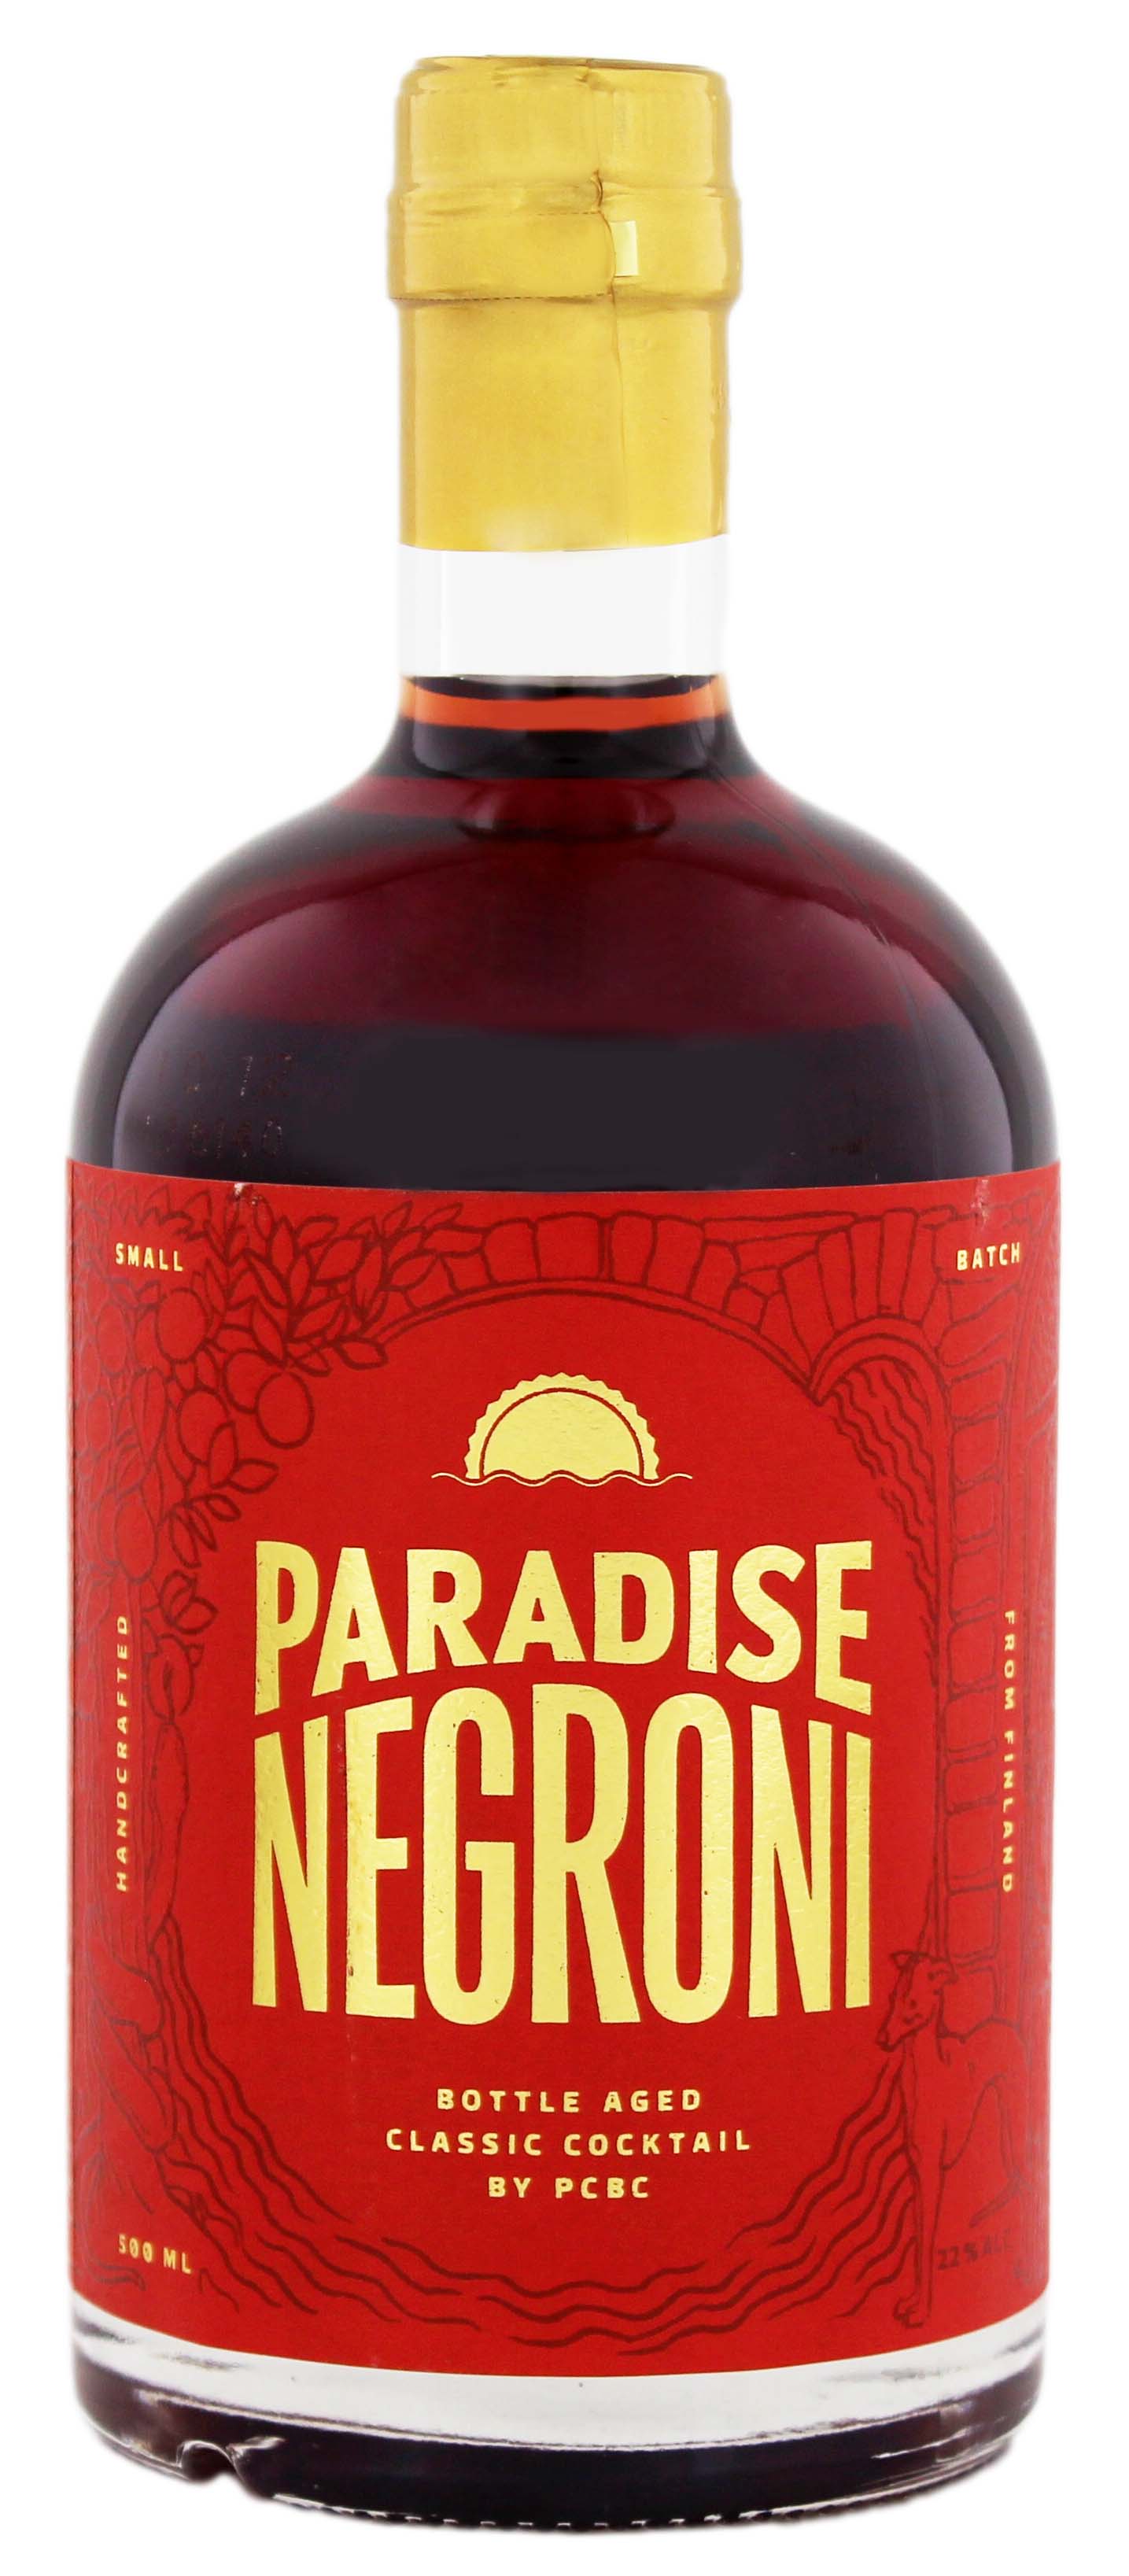 Paradise Negroni 0,5L